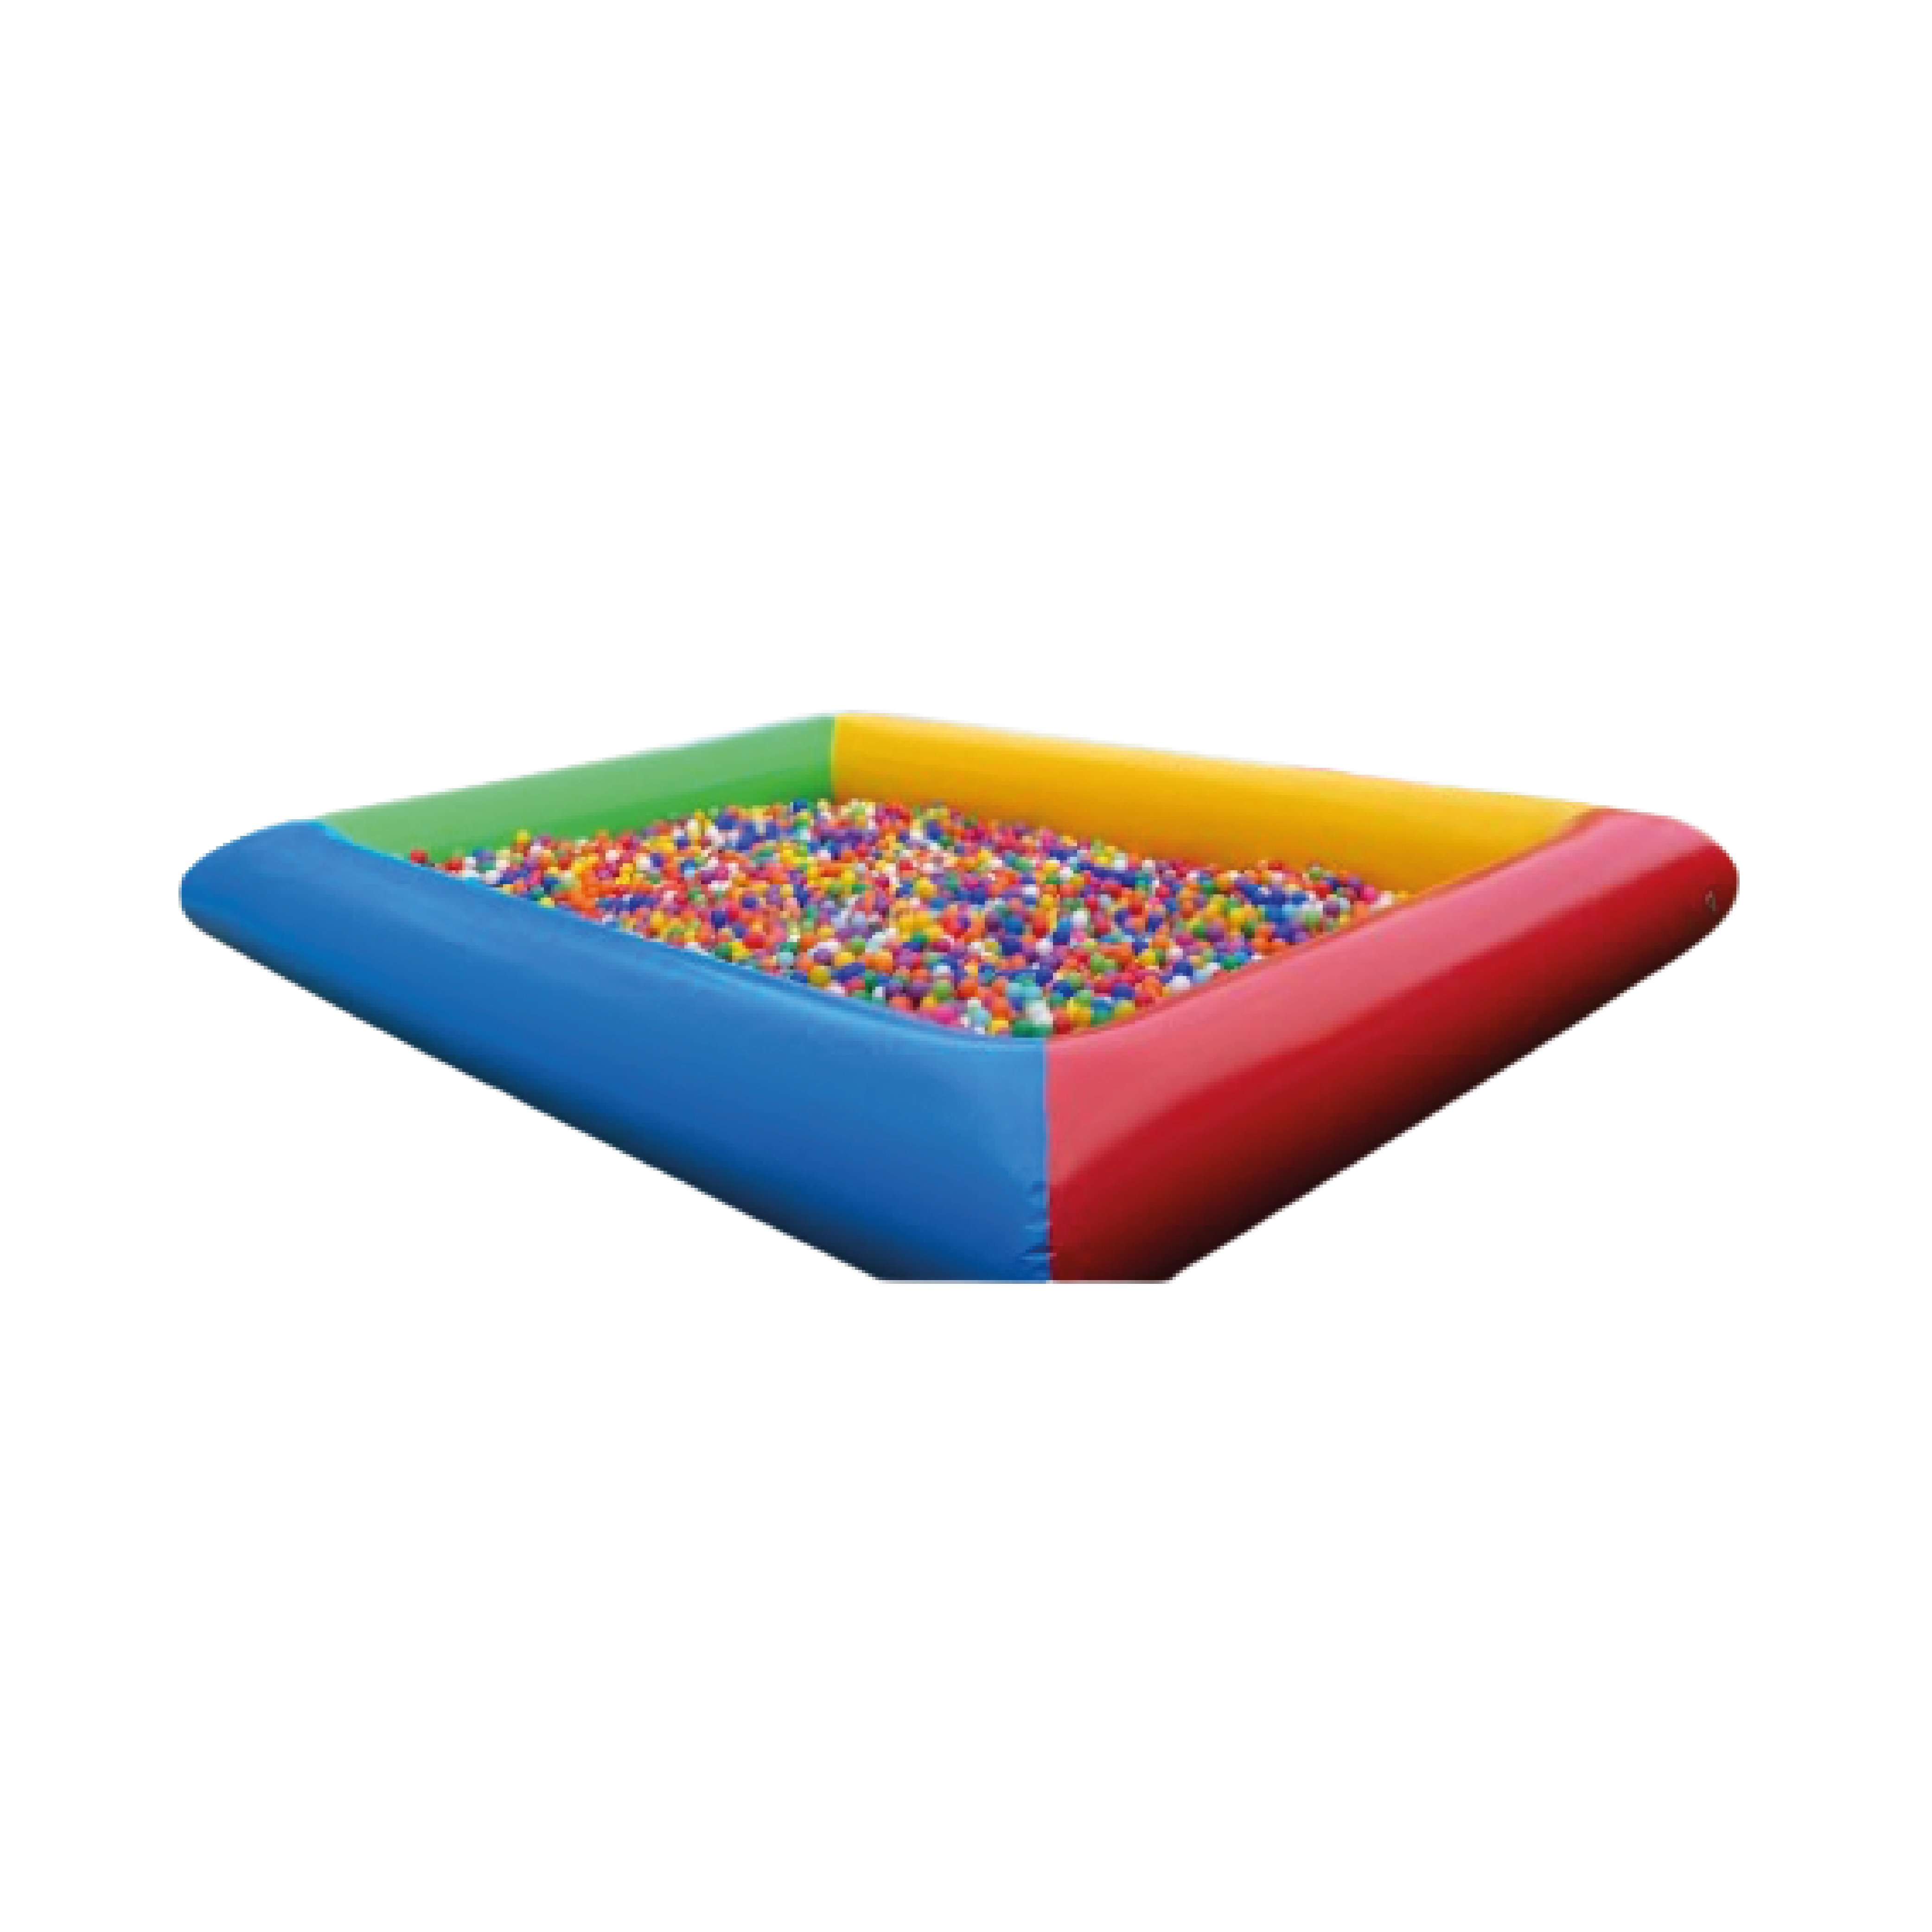 Multicolor ball pit